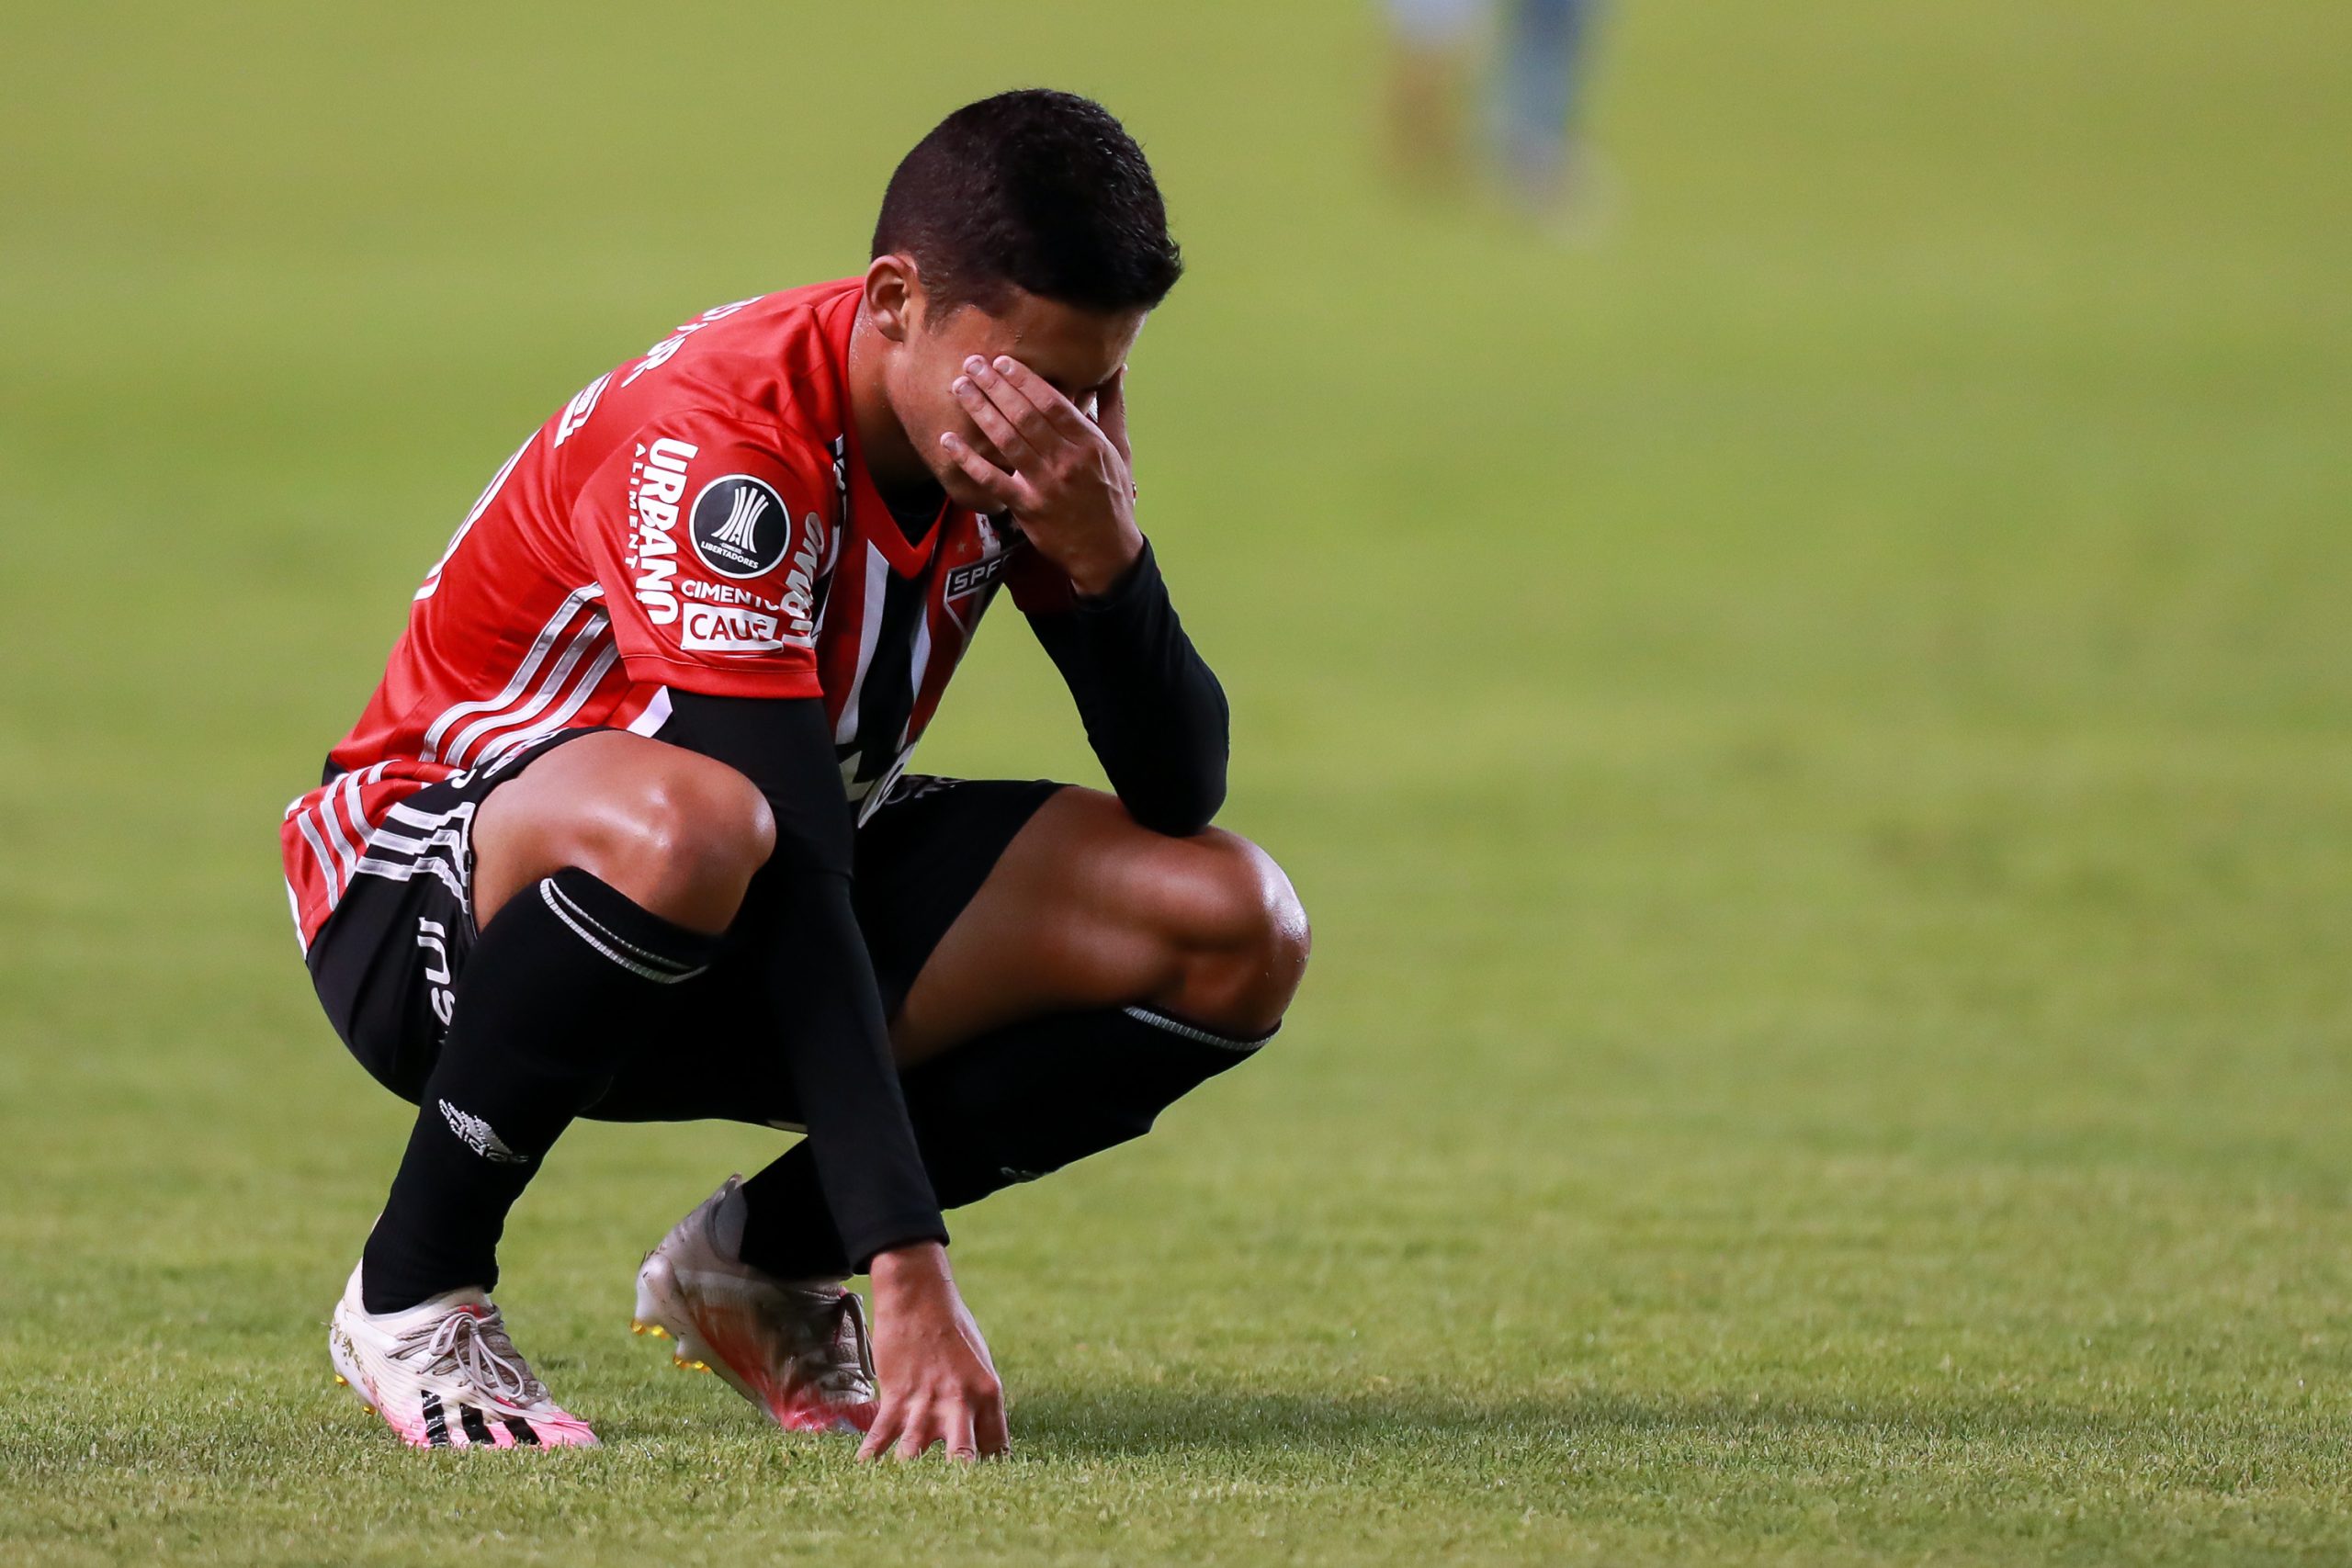 Nestor sofre lesão no joelho e não atua mais nesta temporada; veja detalhes (Photo by José Jácome-Pool/Getty Images)